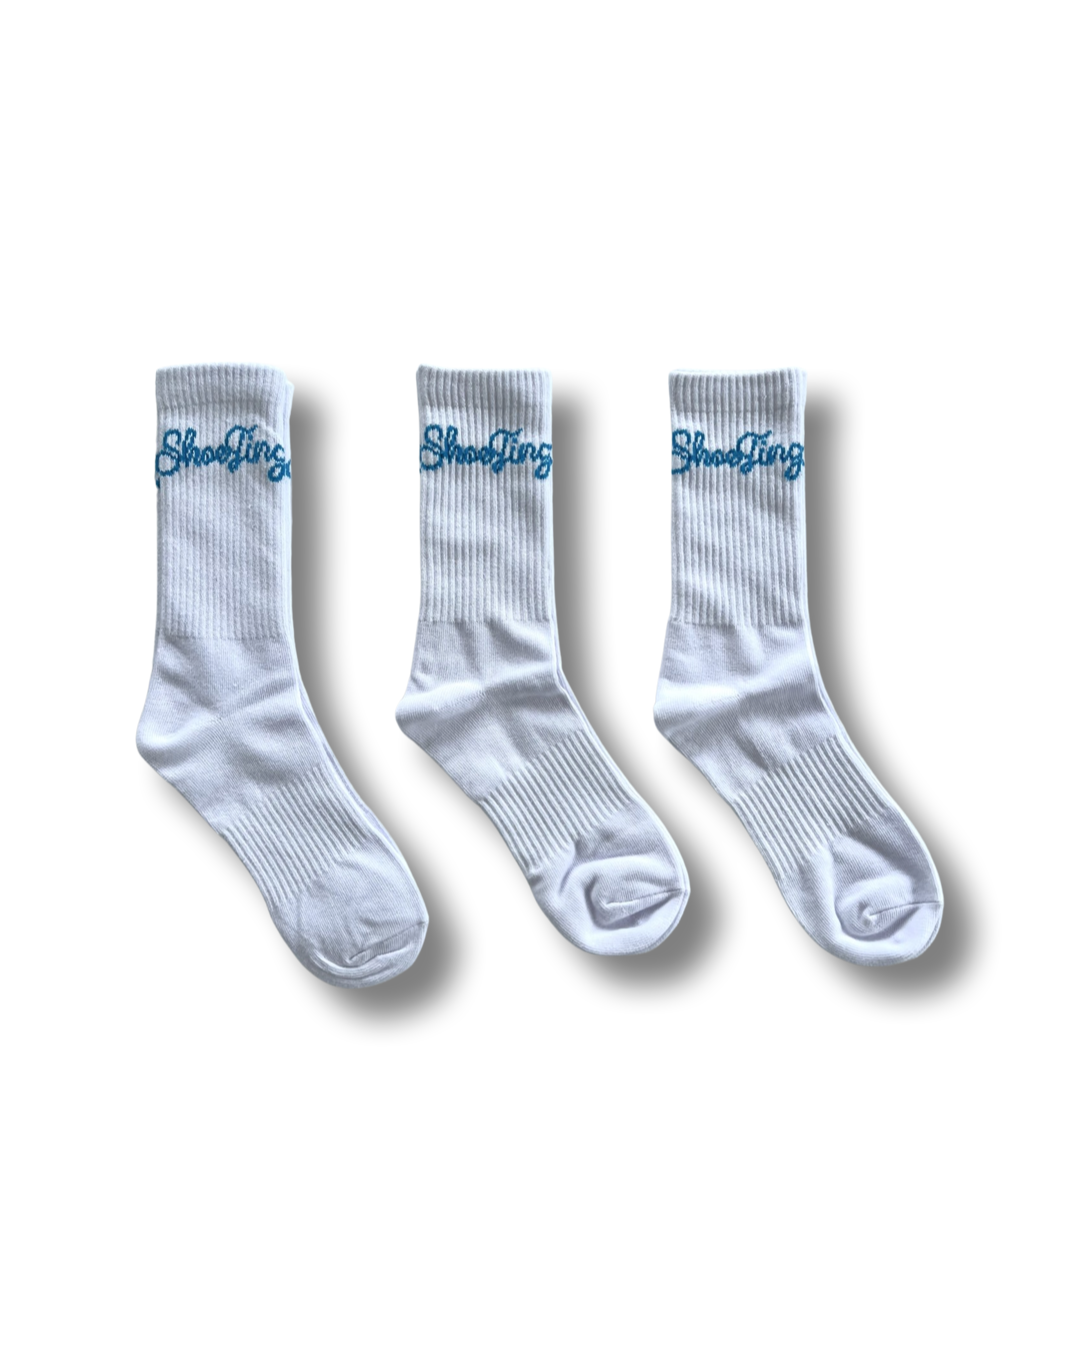 3 Pack of Shoe Tingz White Socks